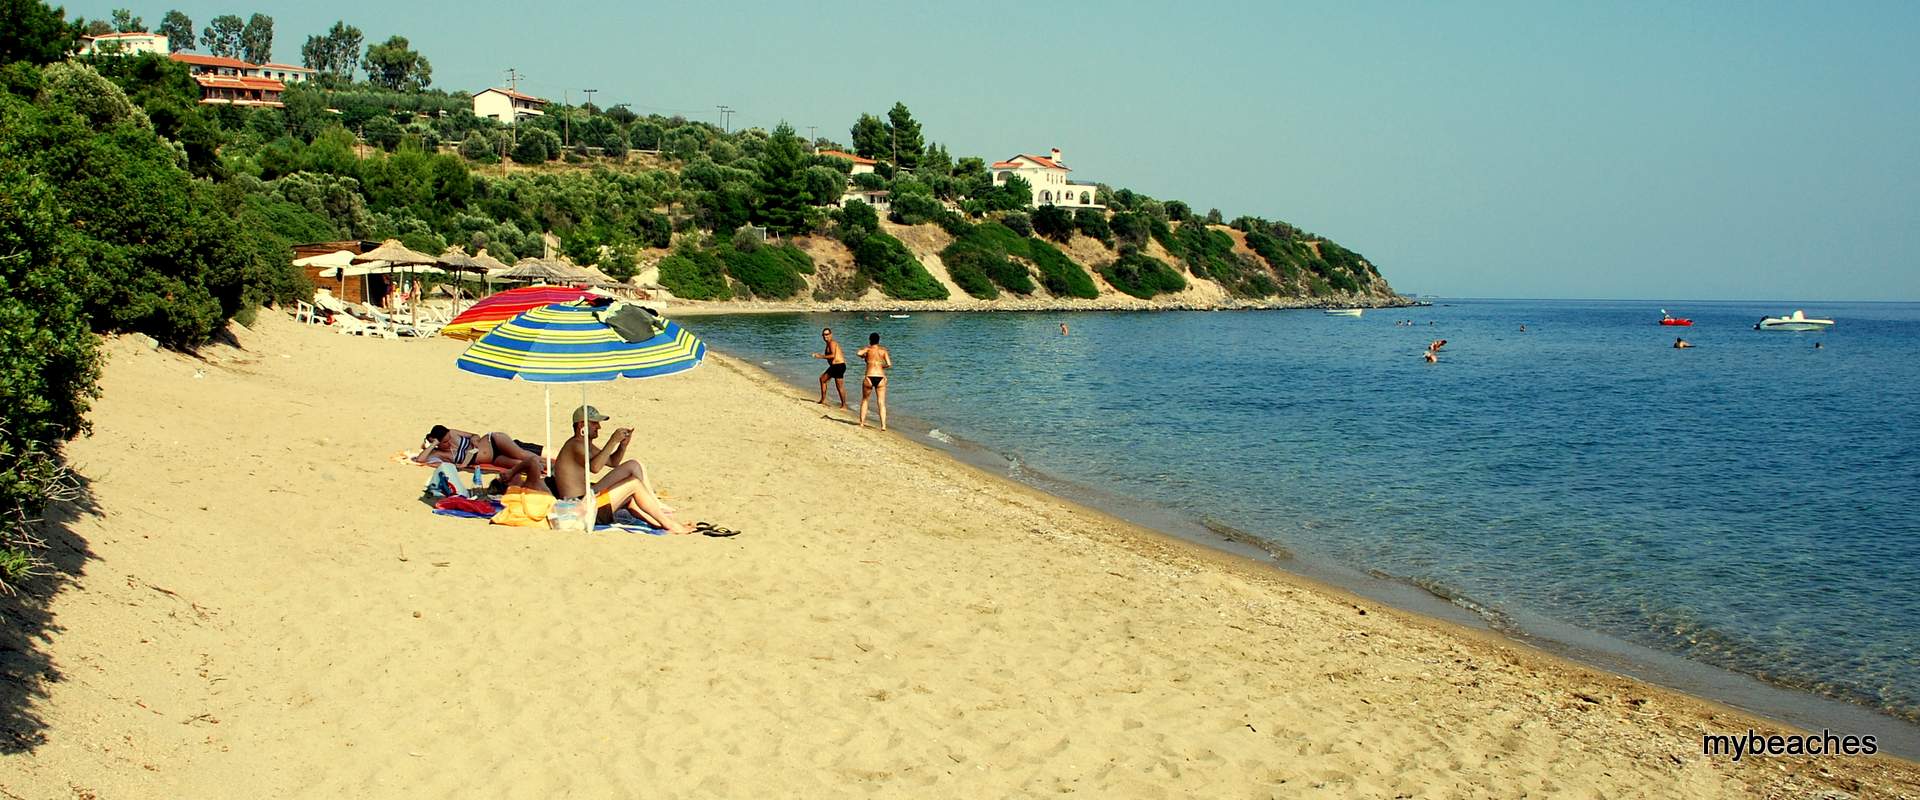 Trikorfo beach, Halkidiki